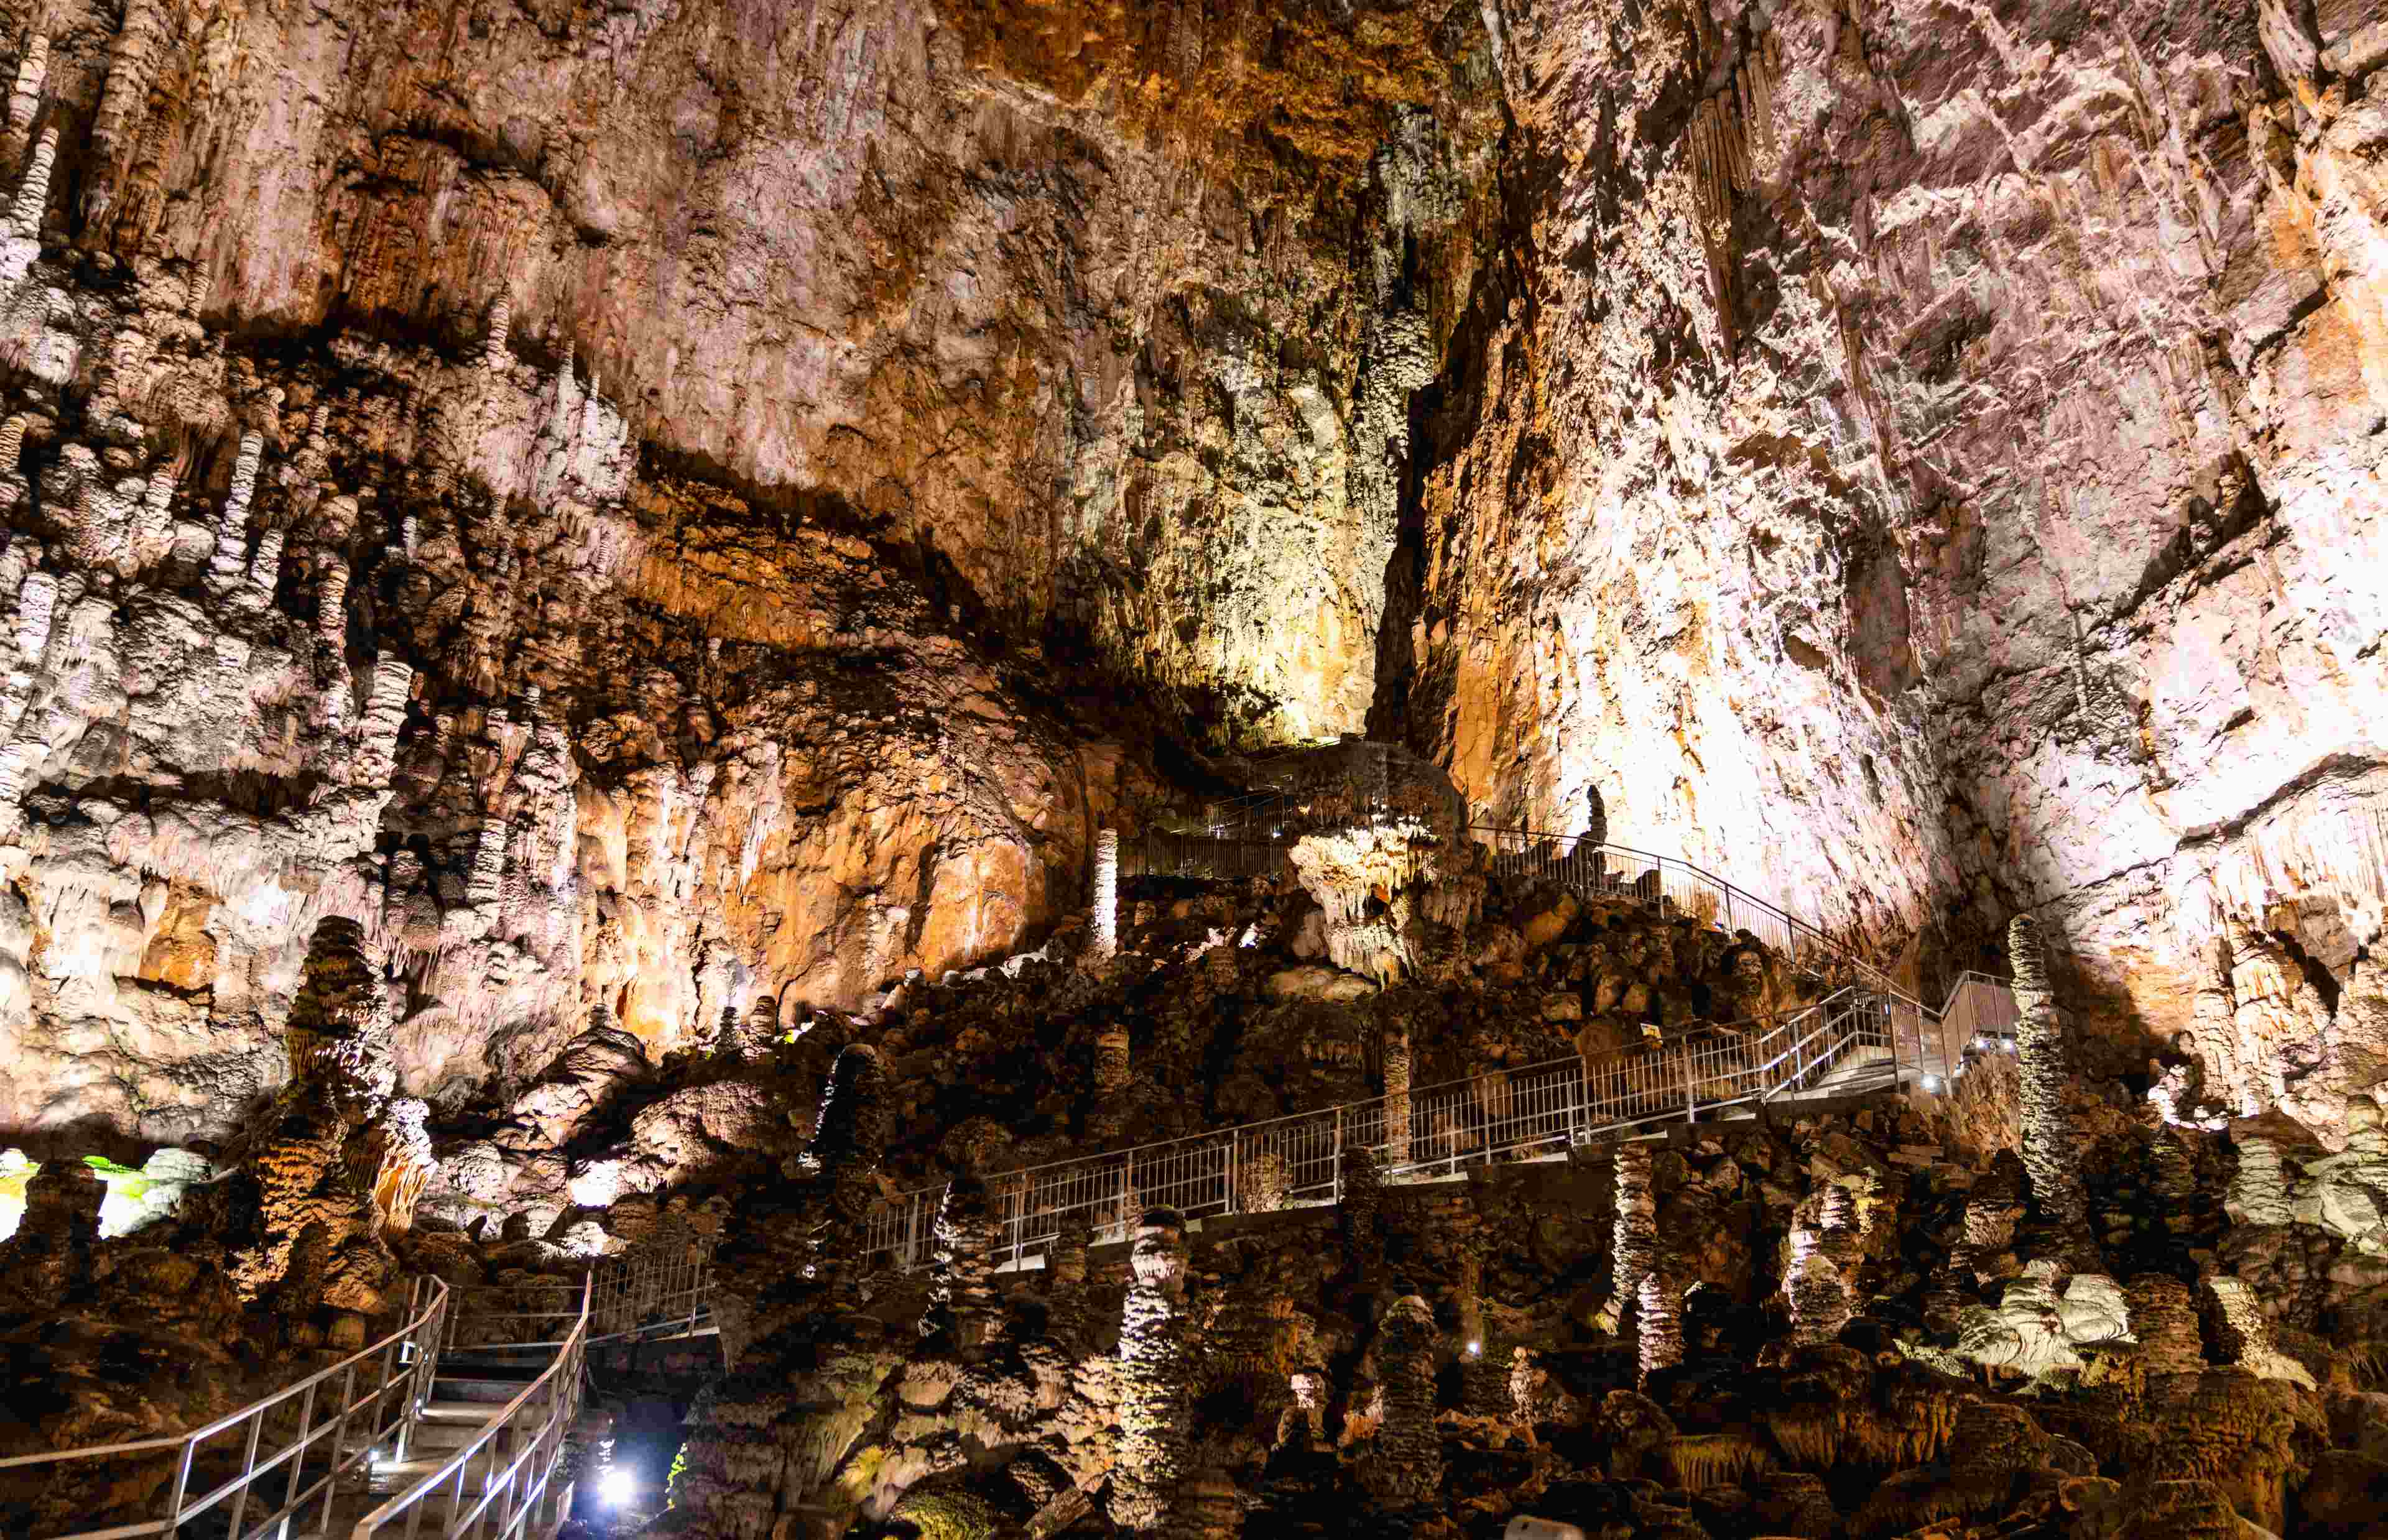 Grotta Gigante (Leonid Andronov/Shutterstock)